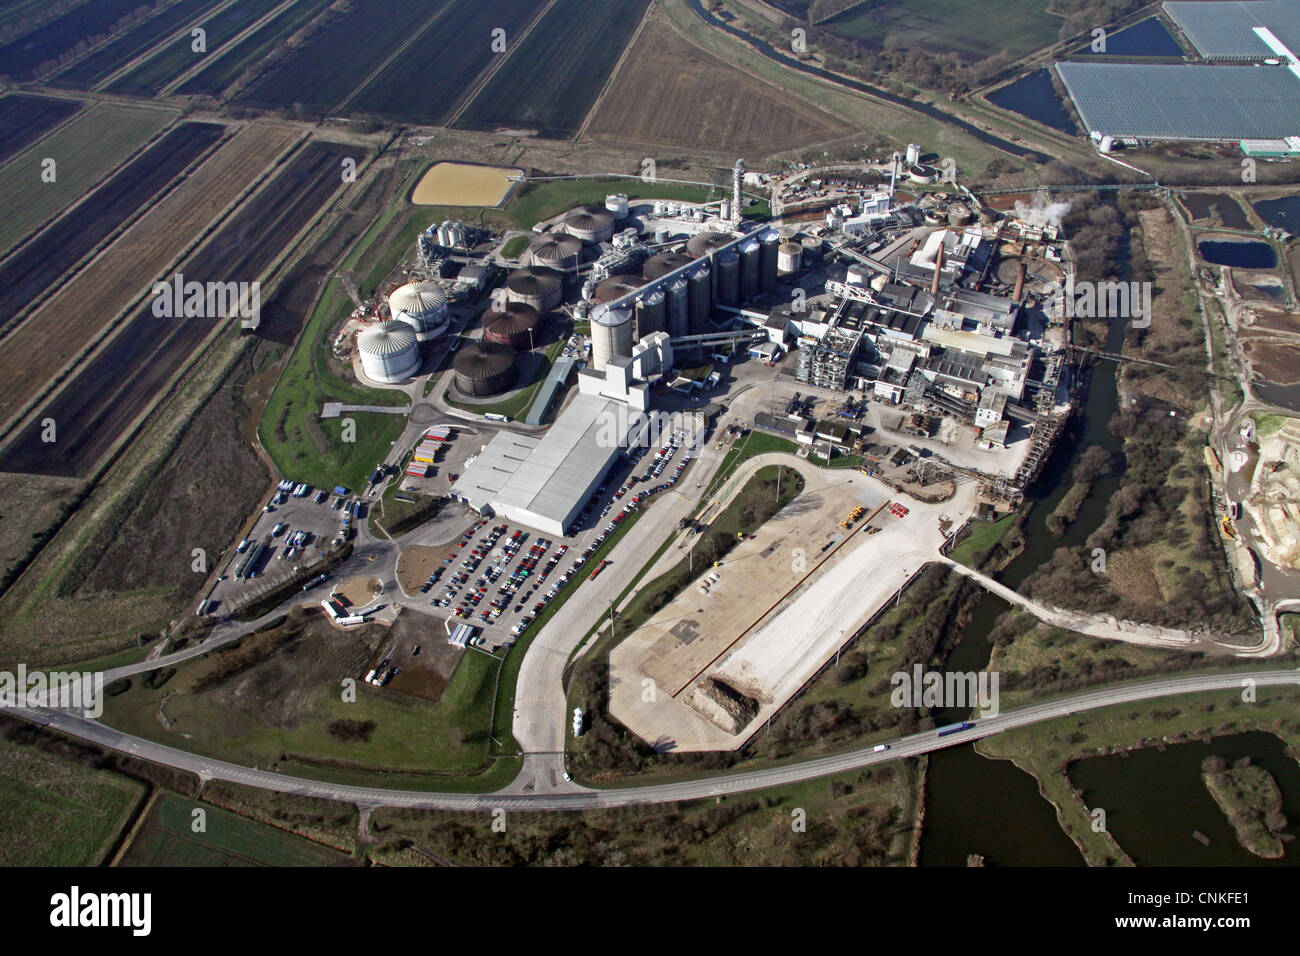 Aerial view of British Sugar PLC, sugar factory, Wissington, King's Lynn PE33 9QG Stock Photo